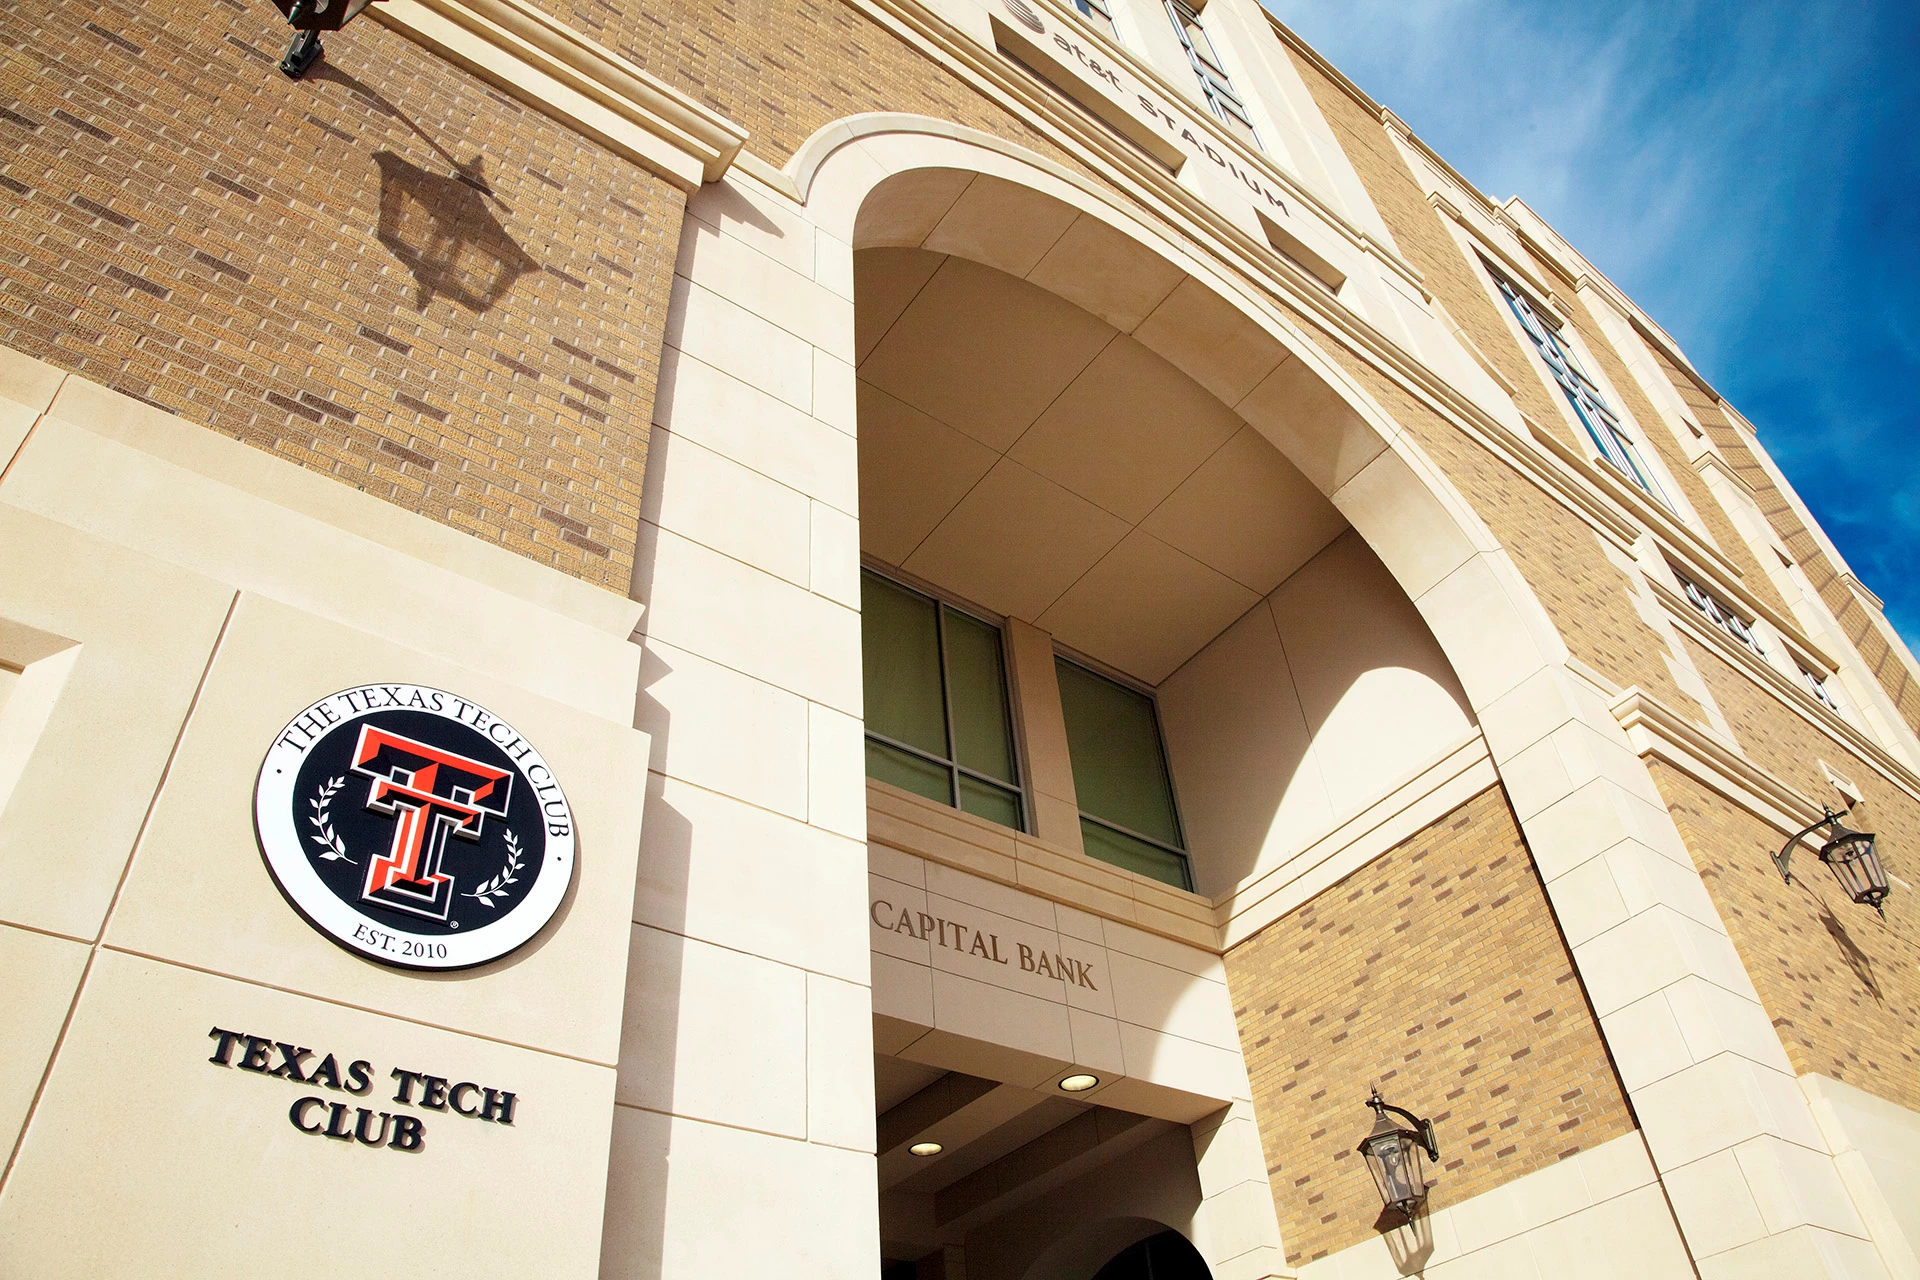 The Texas Tech Club - Exterior